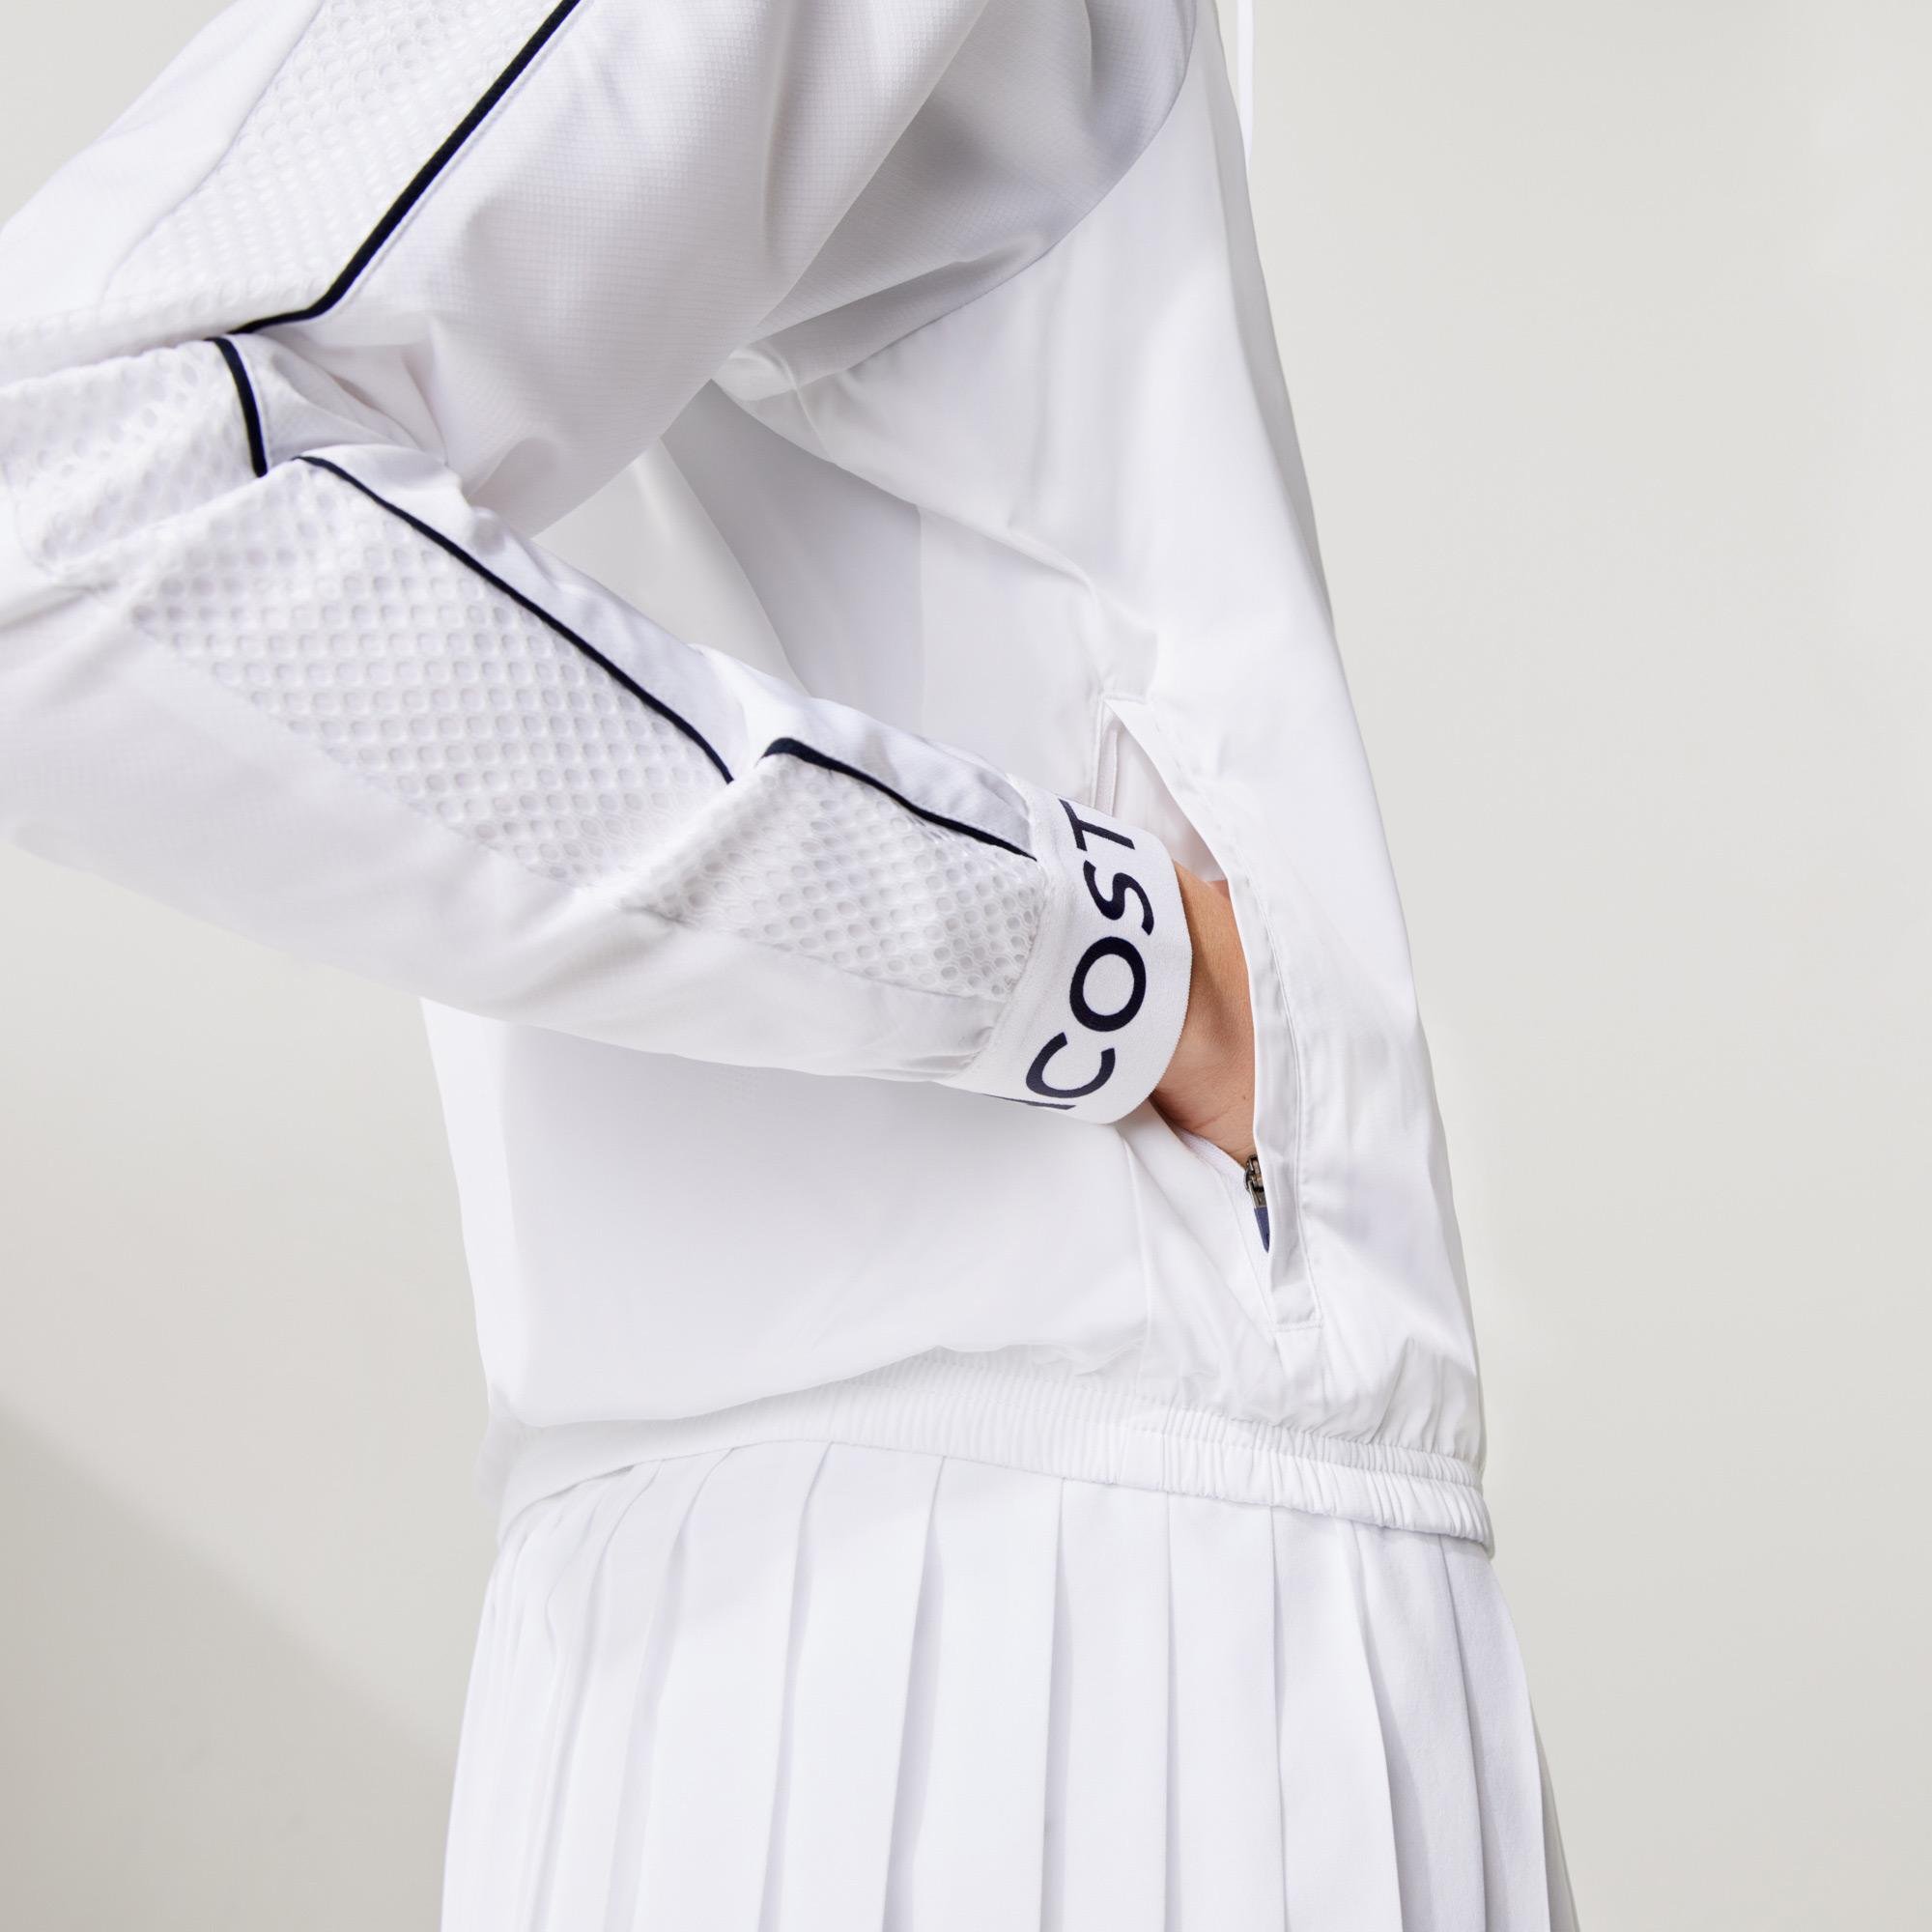 Lacoste Women’s SPORT Water-Resistant Zip Tennis Jacket